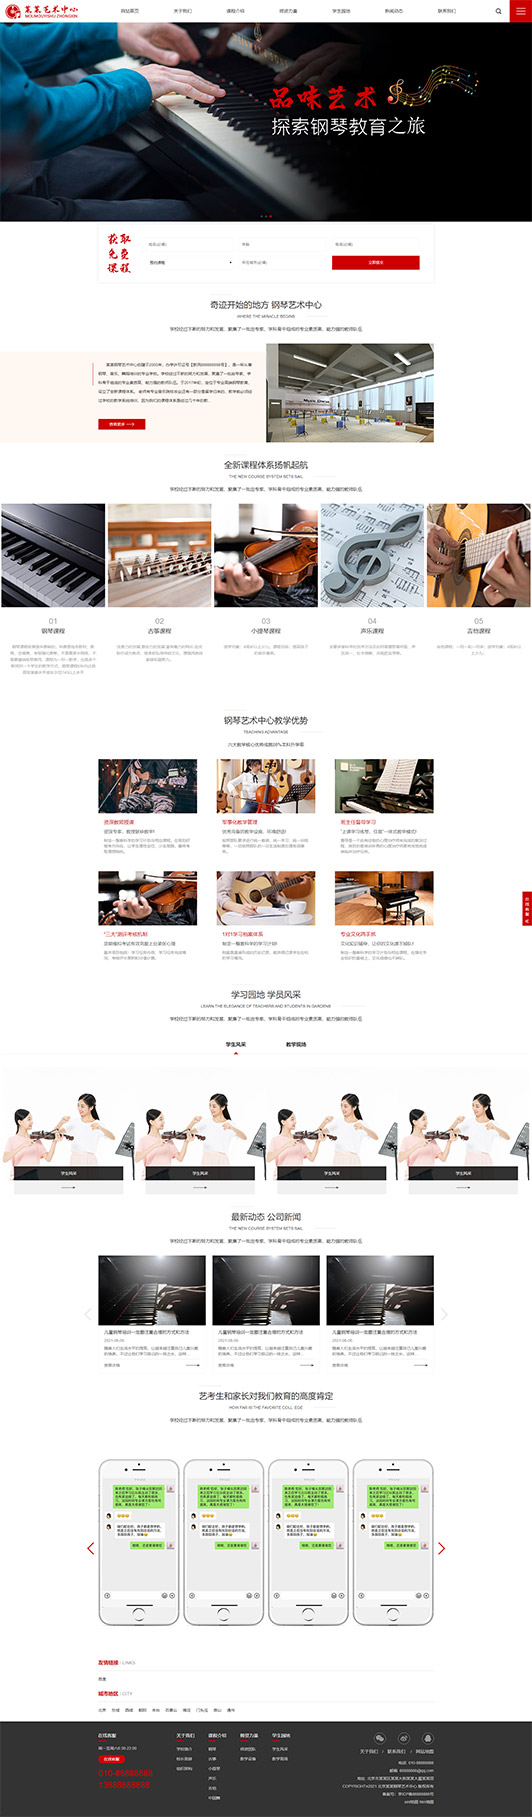 宁波钢琴艺术培训公司响应式企业网站